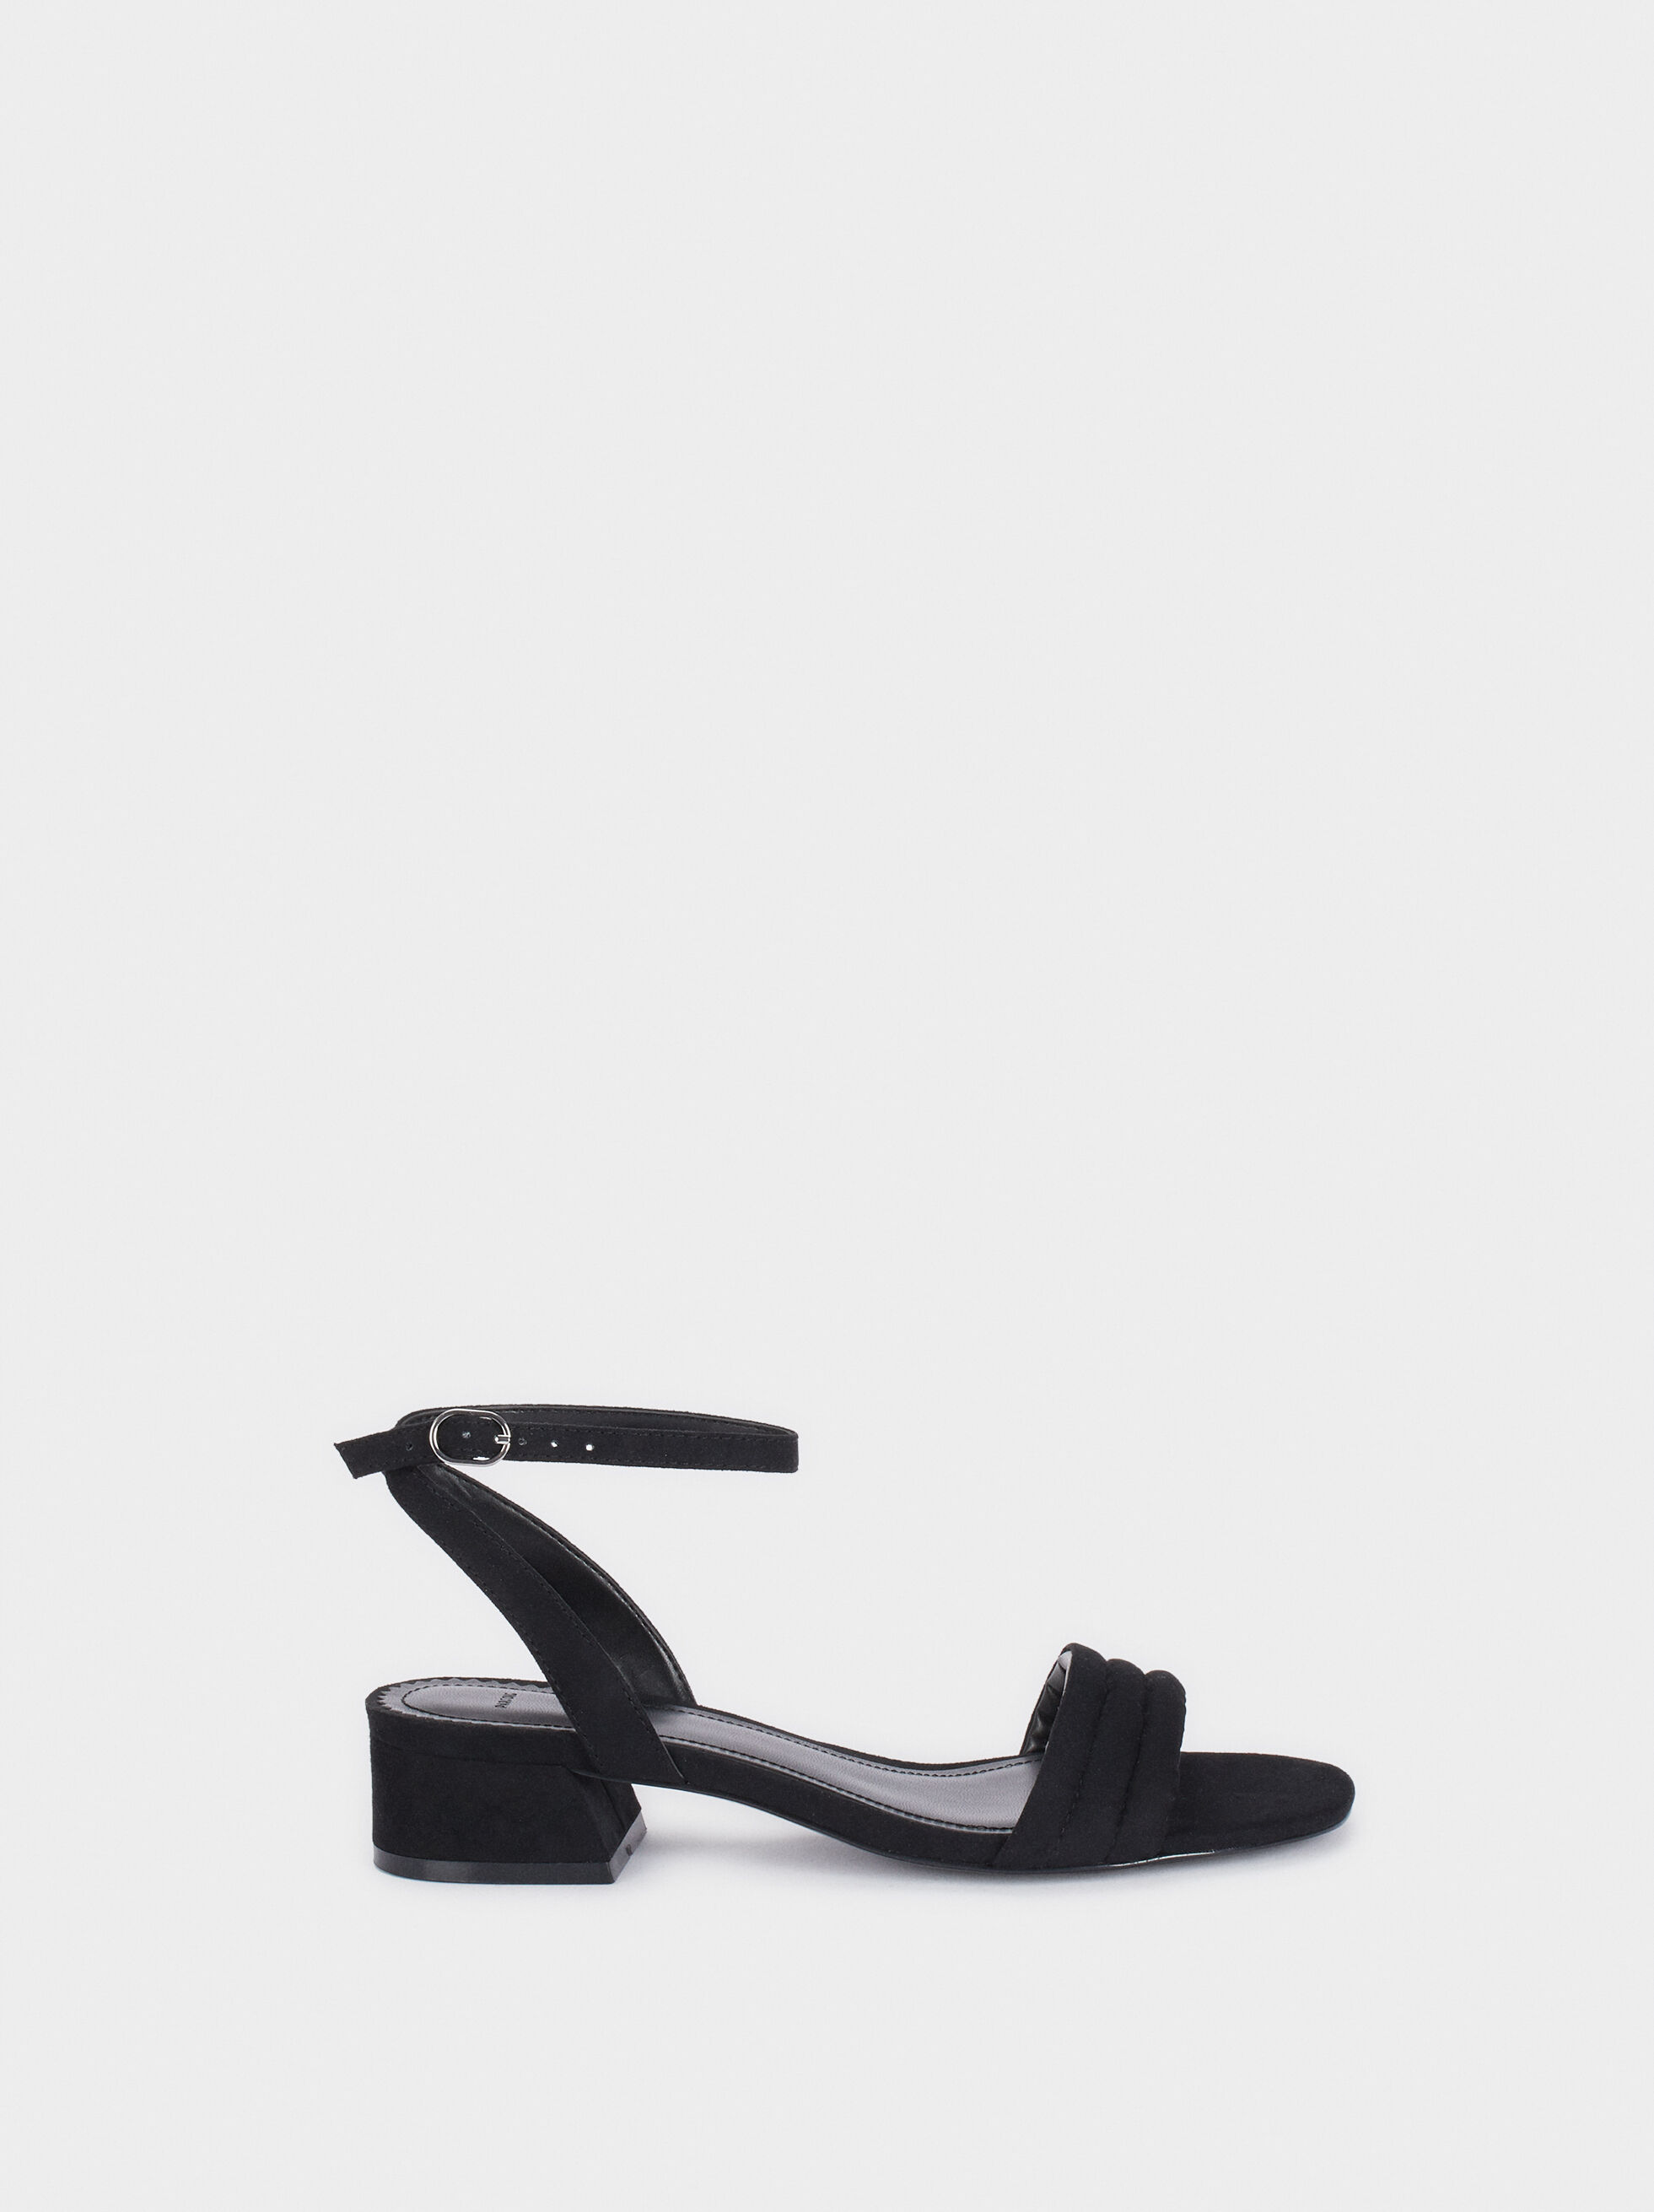 black heel sandals online